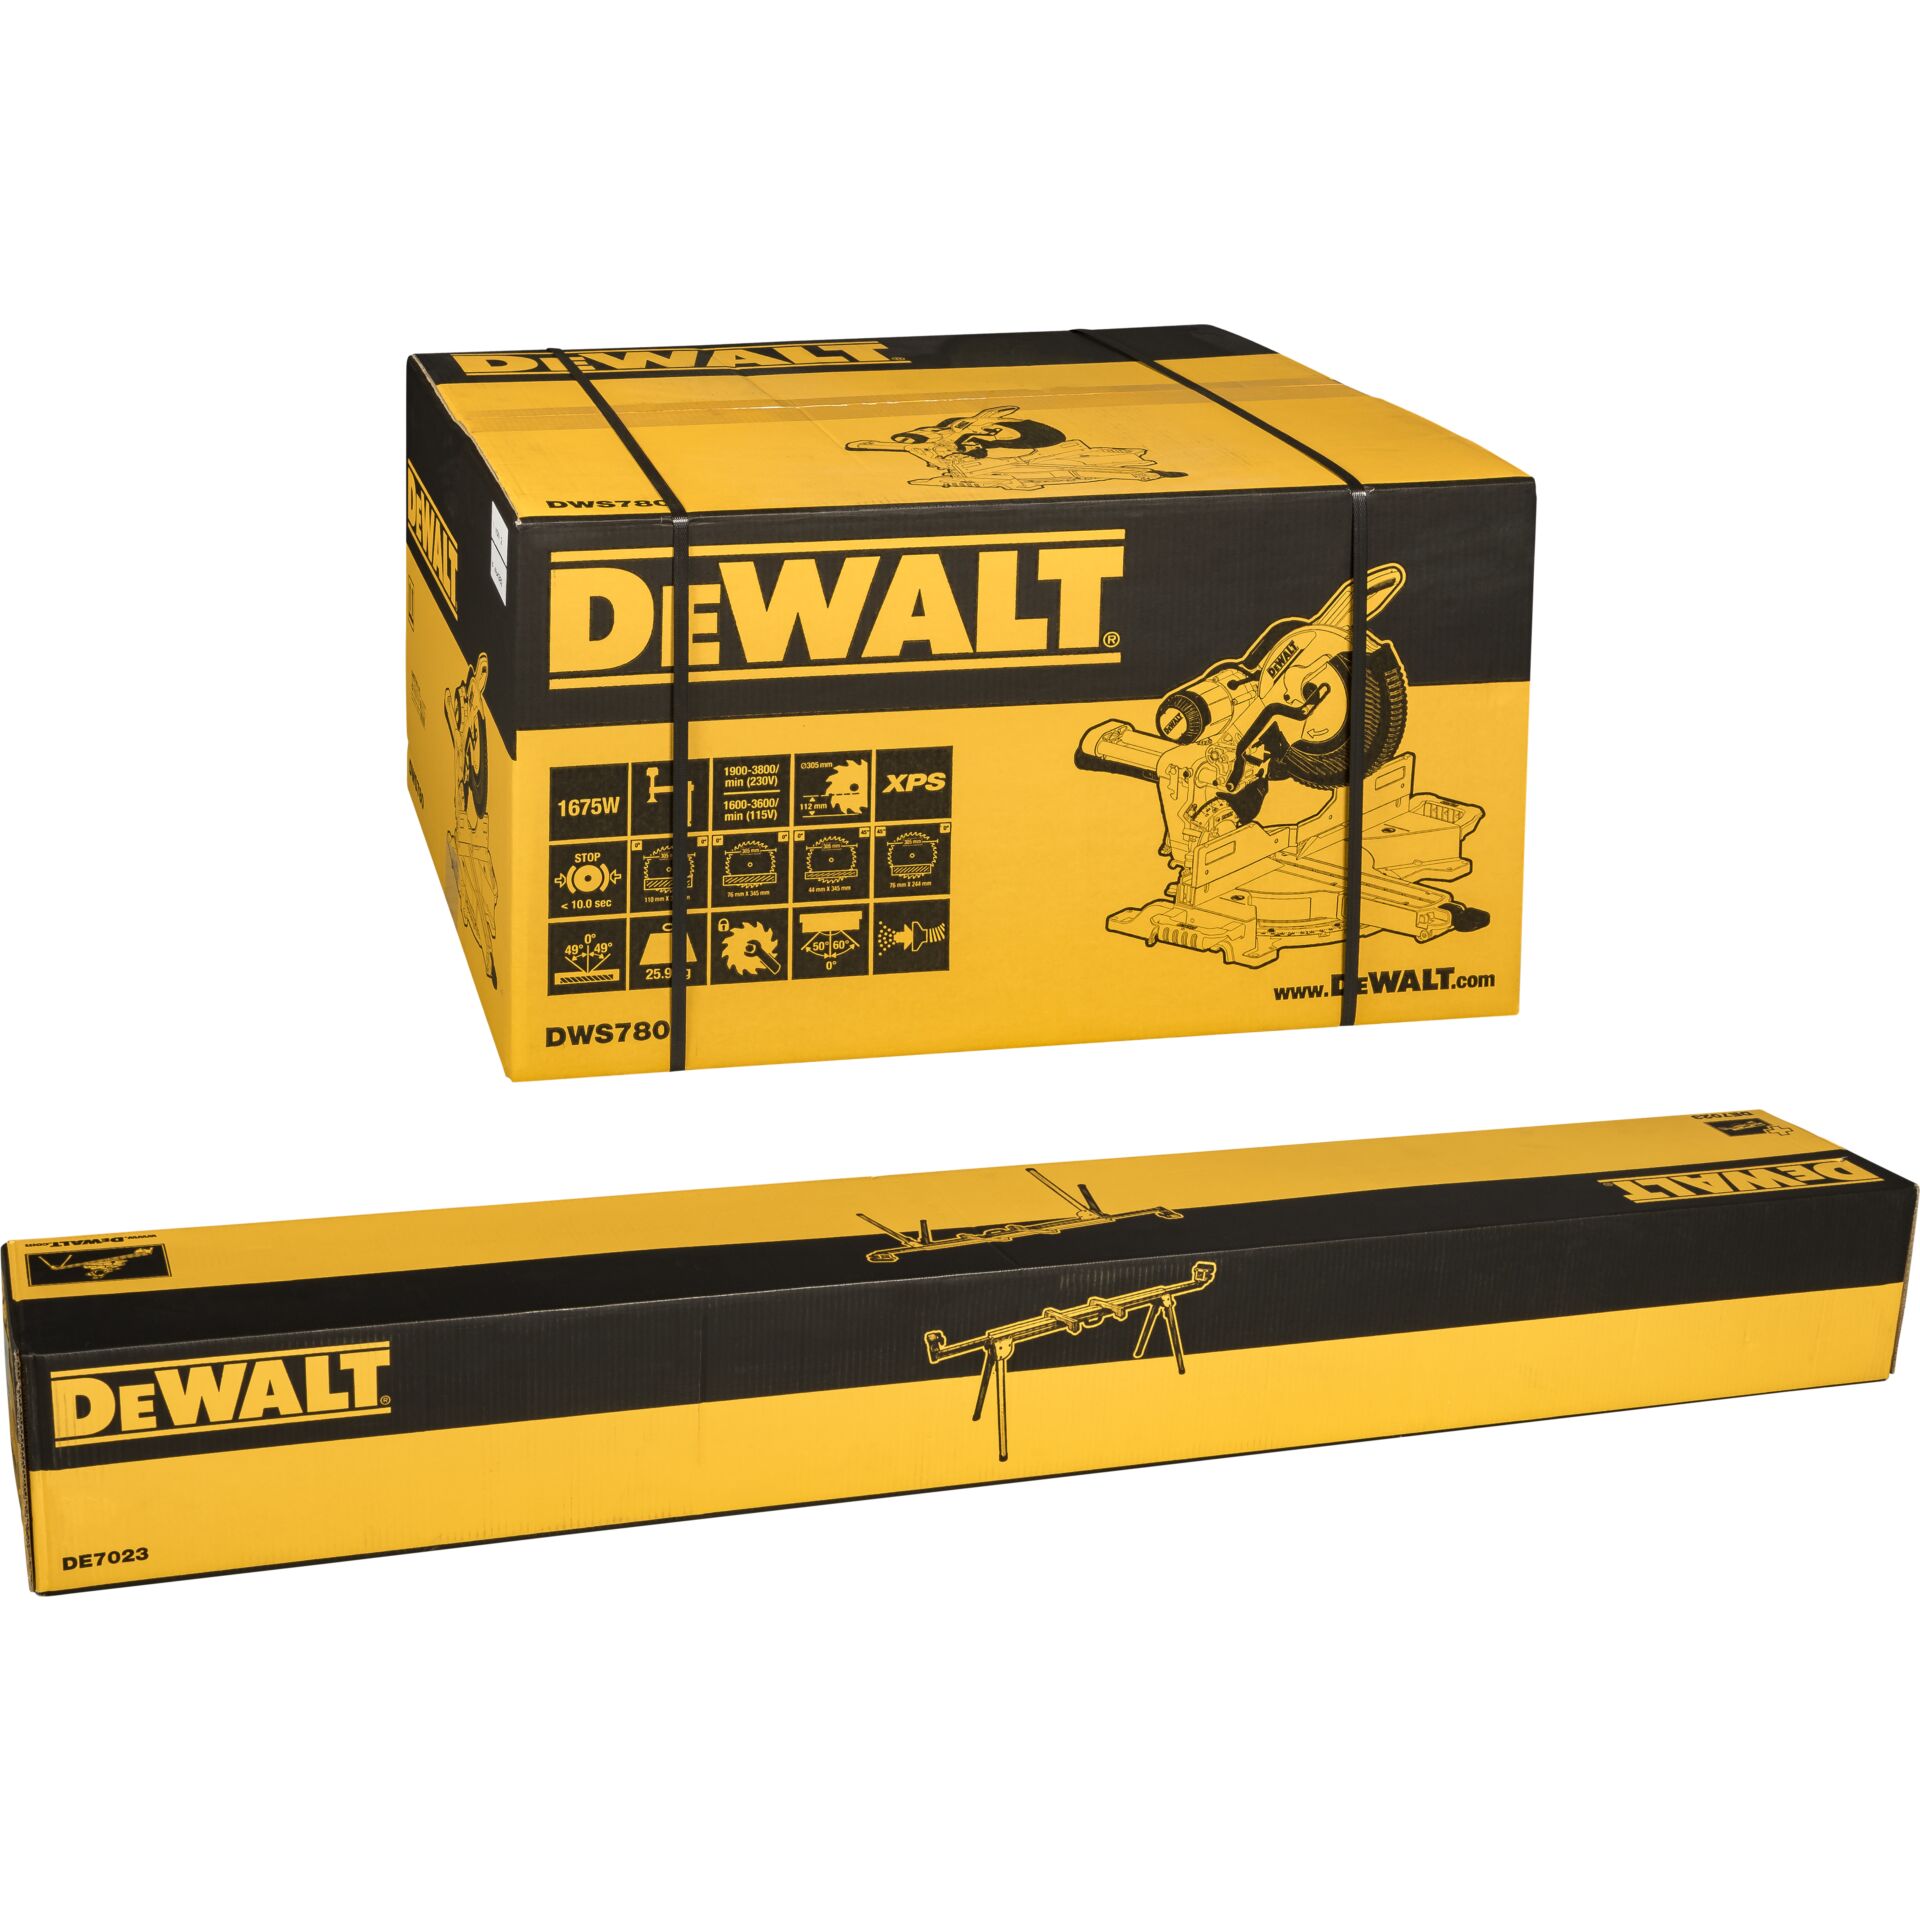 DeWalt DWS780KIT Paneelsägen-Set inkl. Unterges.